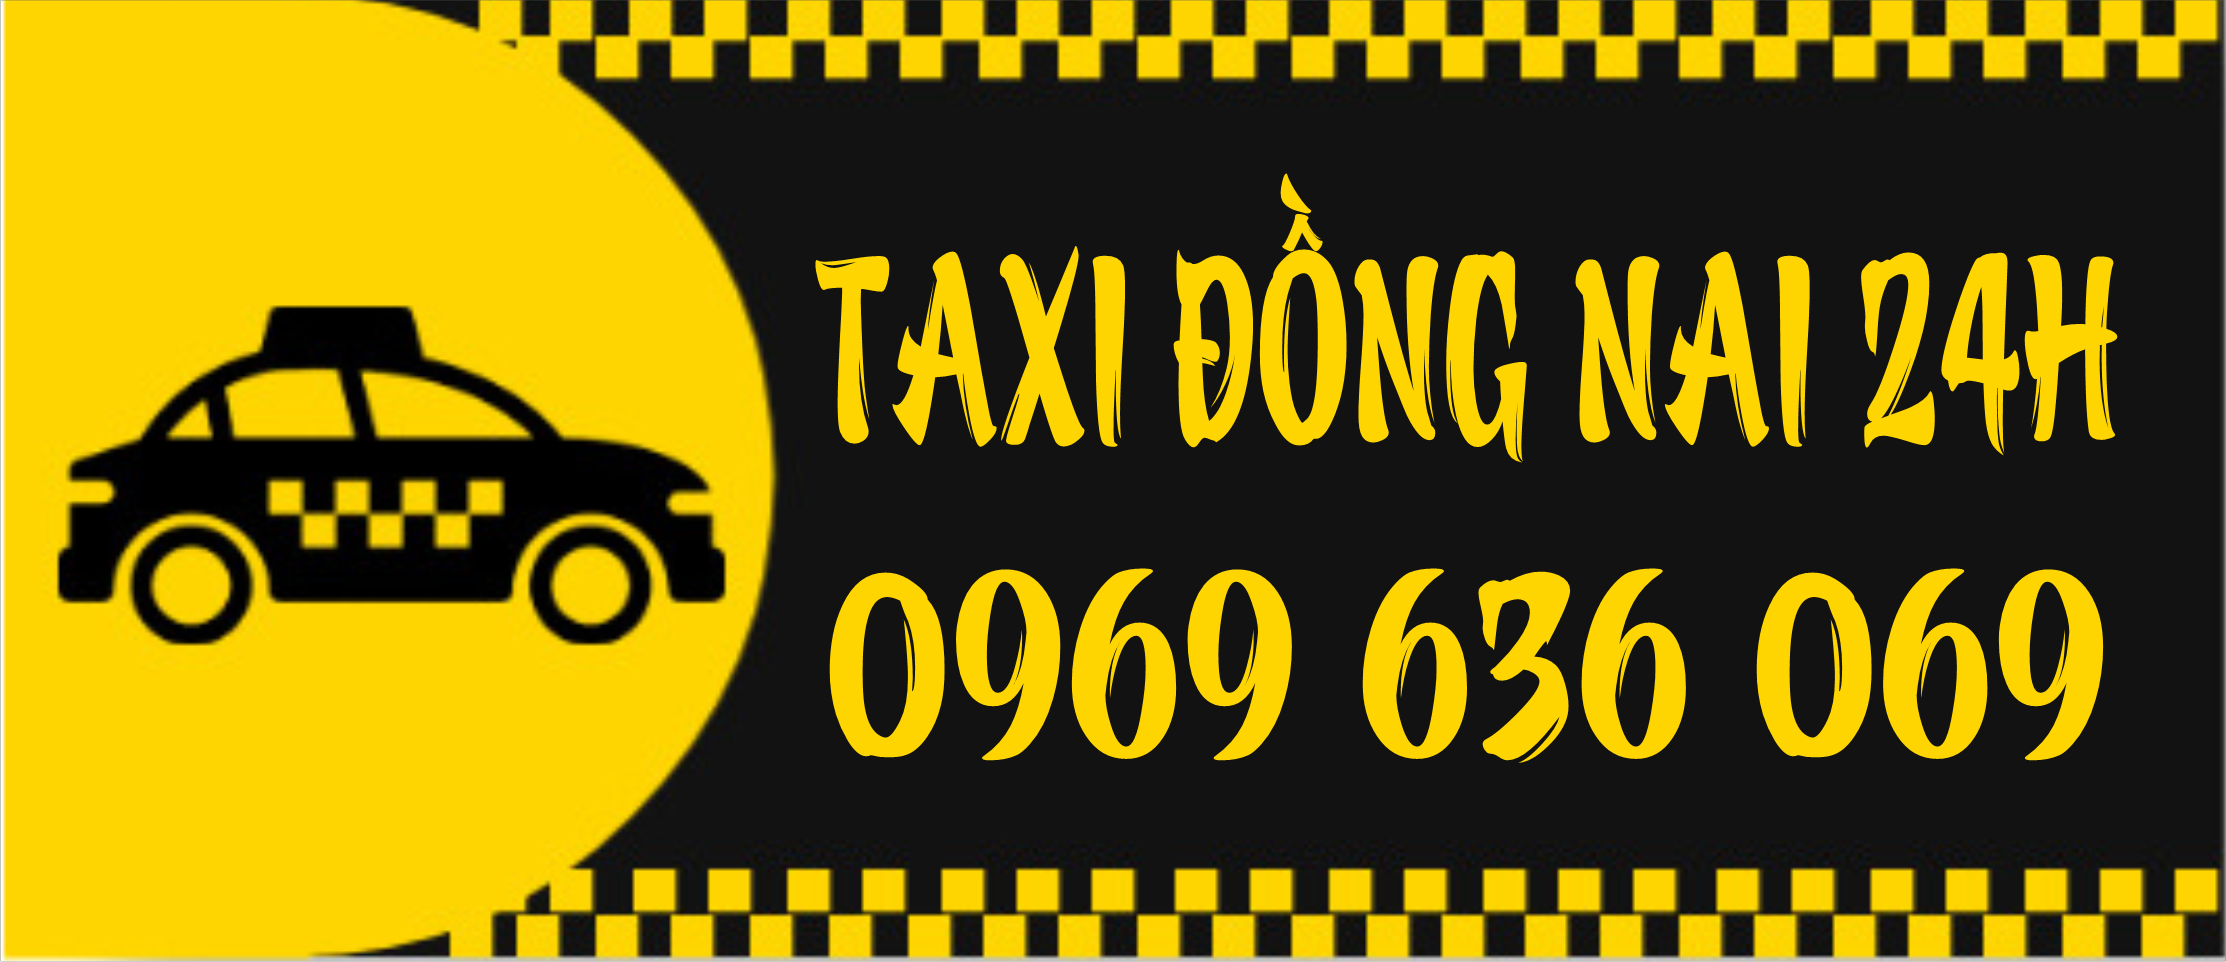 Taxi Đồng Nai 24h